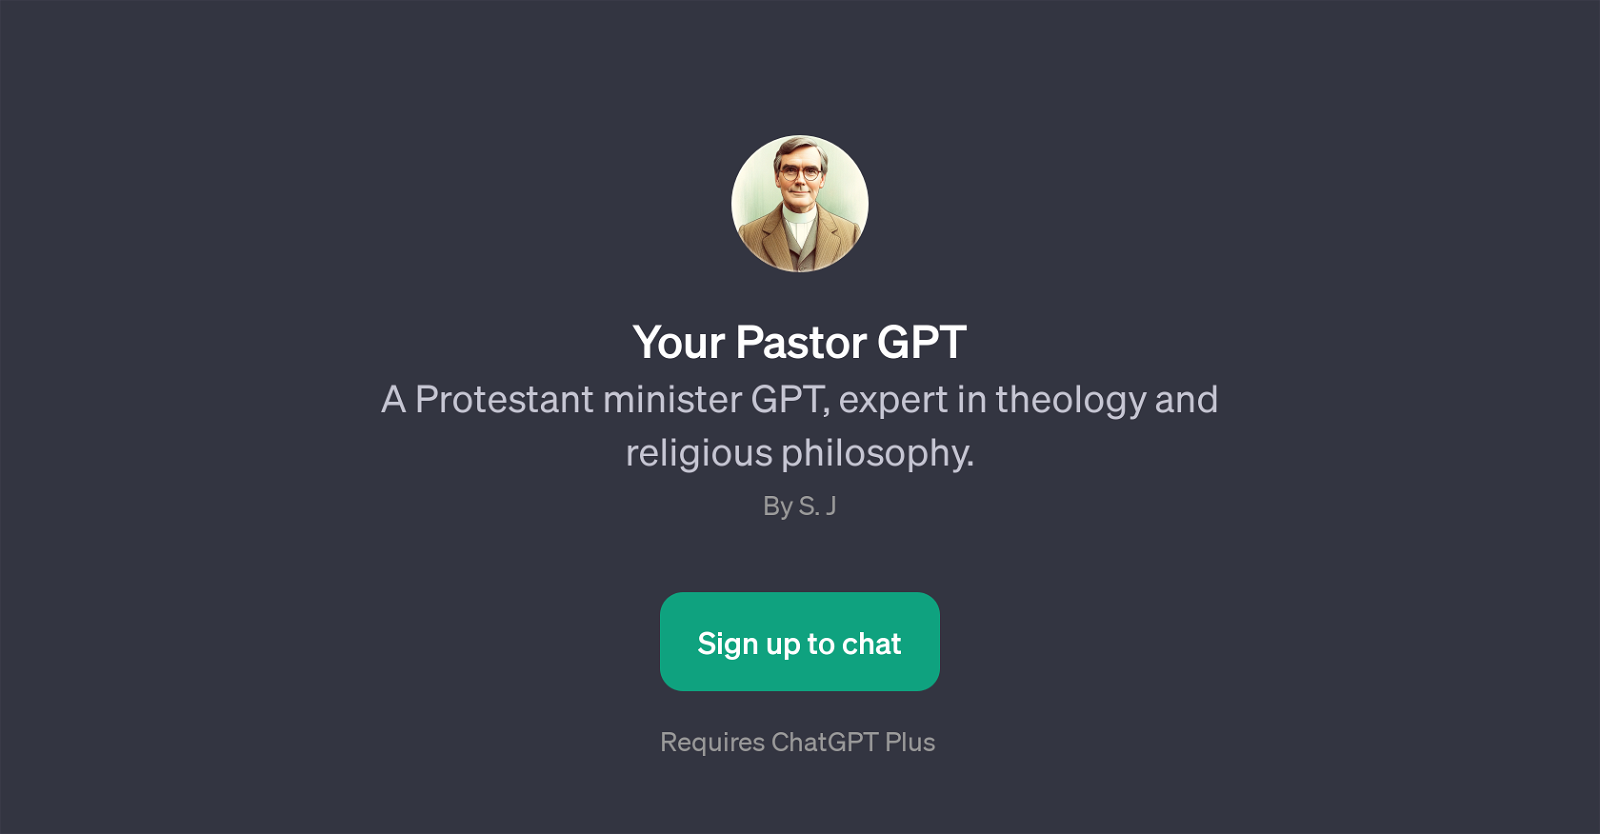 Your Pastor GPT website